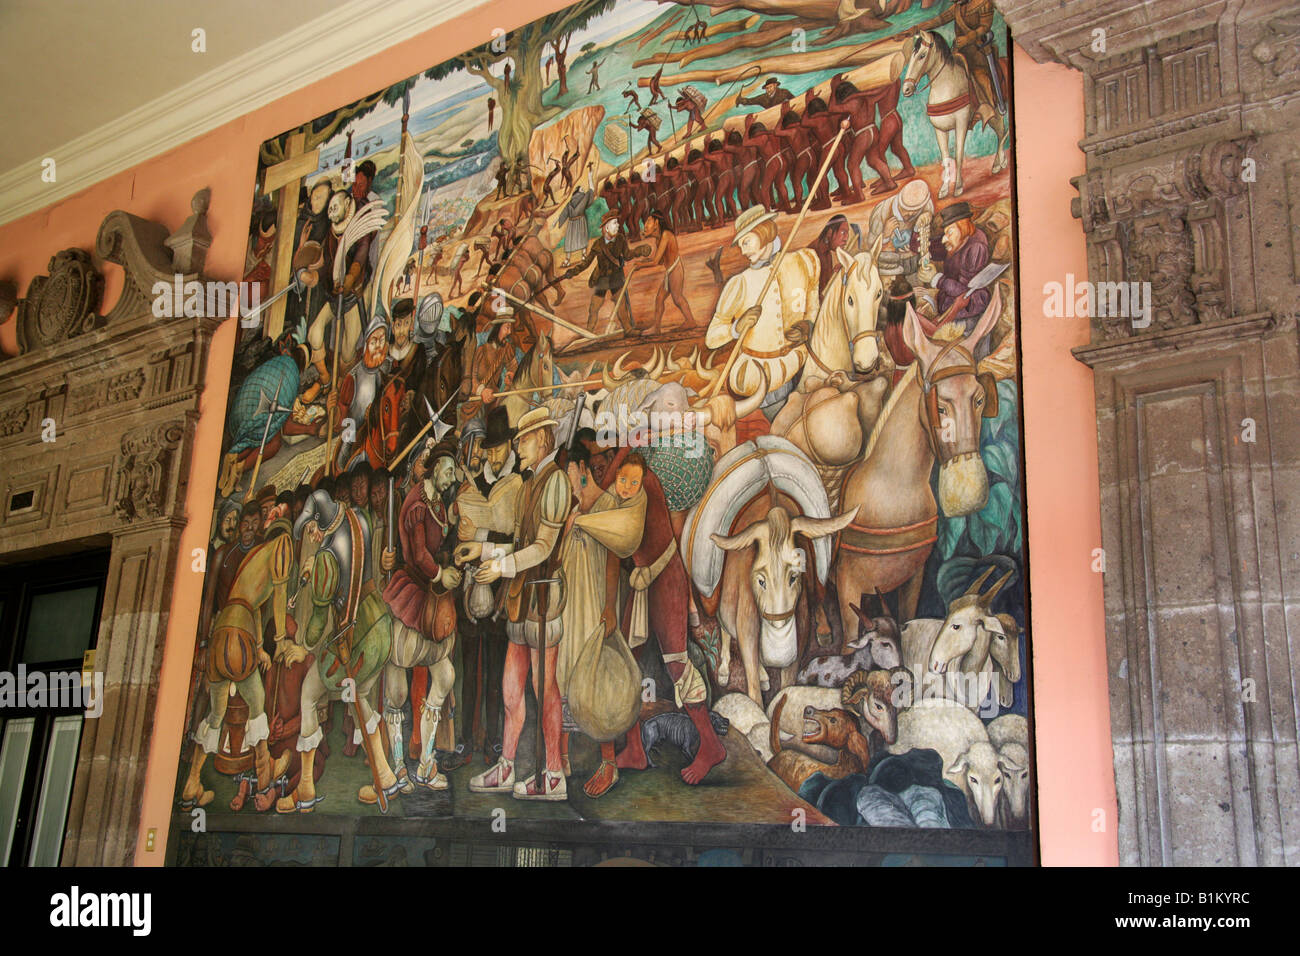 Murale dans le Palais National qui présente la vie en Cœur de Tenochitlan, Place Zocalo, Plaza de la Constitucion, Mexico City Banque D'Images